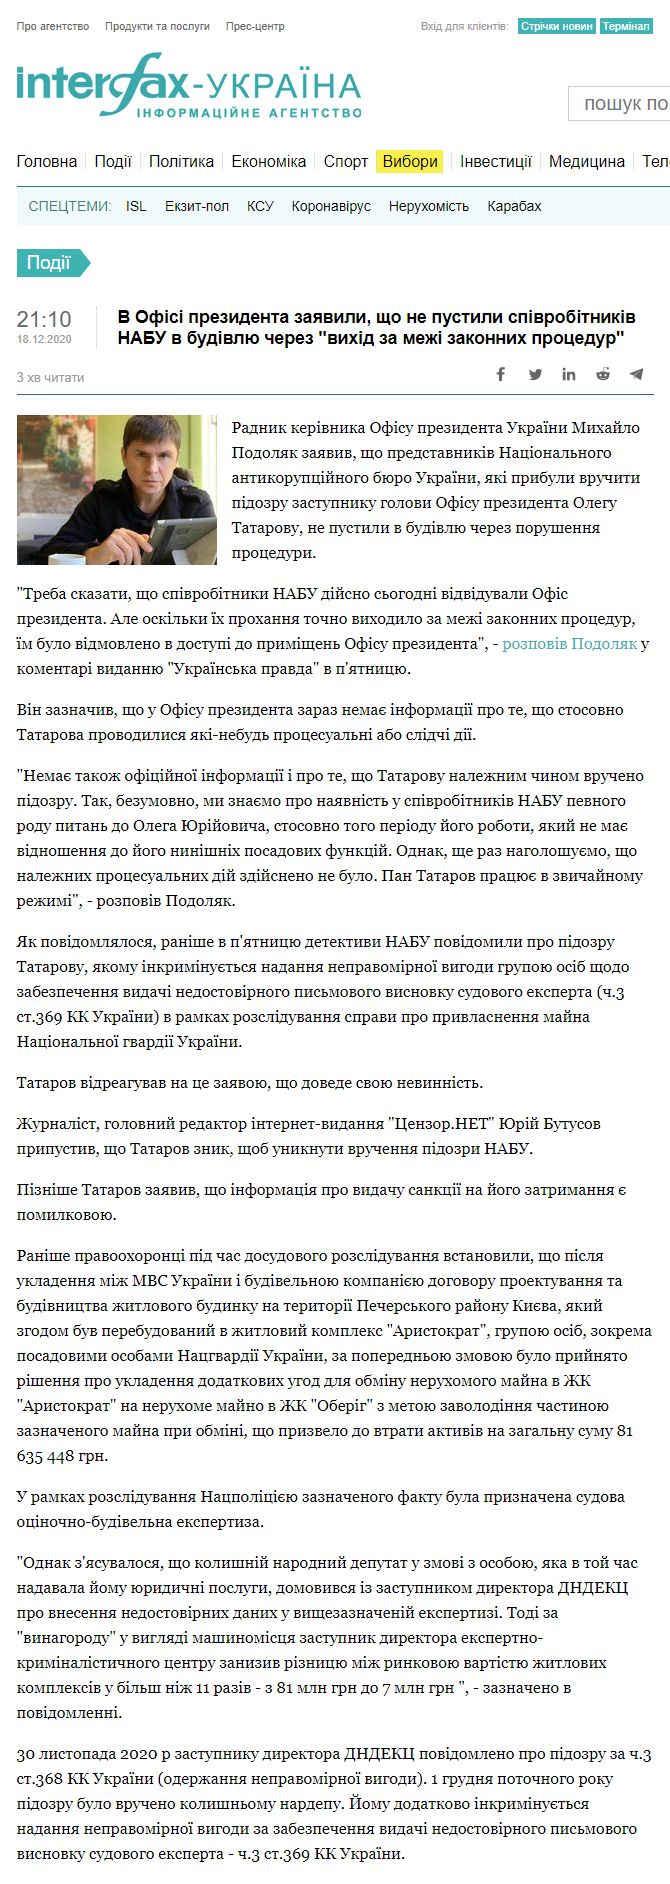 https://ua.interfax.com.ua/news/general/711008.html